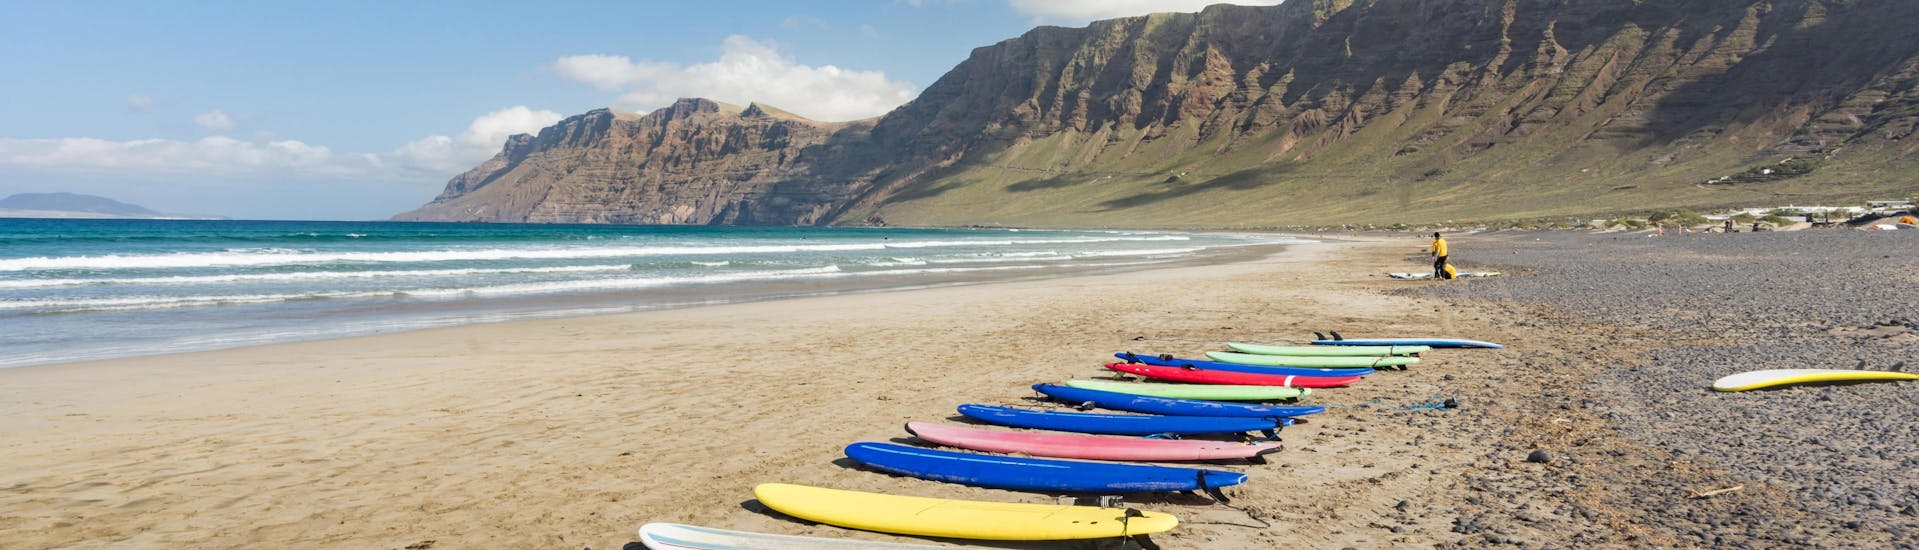 Unas tablas de surf están puestas en la playa, listas para ser usadas para surfear en Lanzarote.